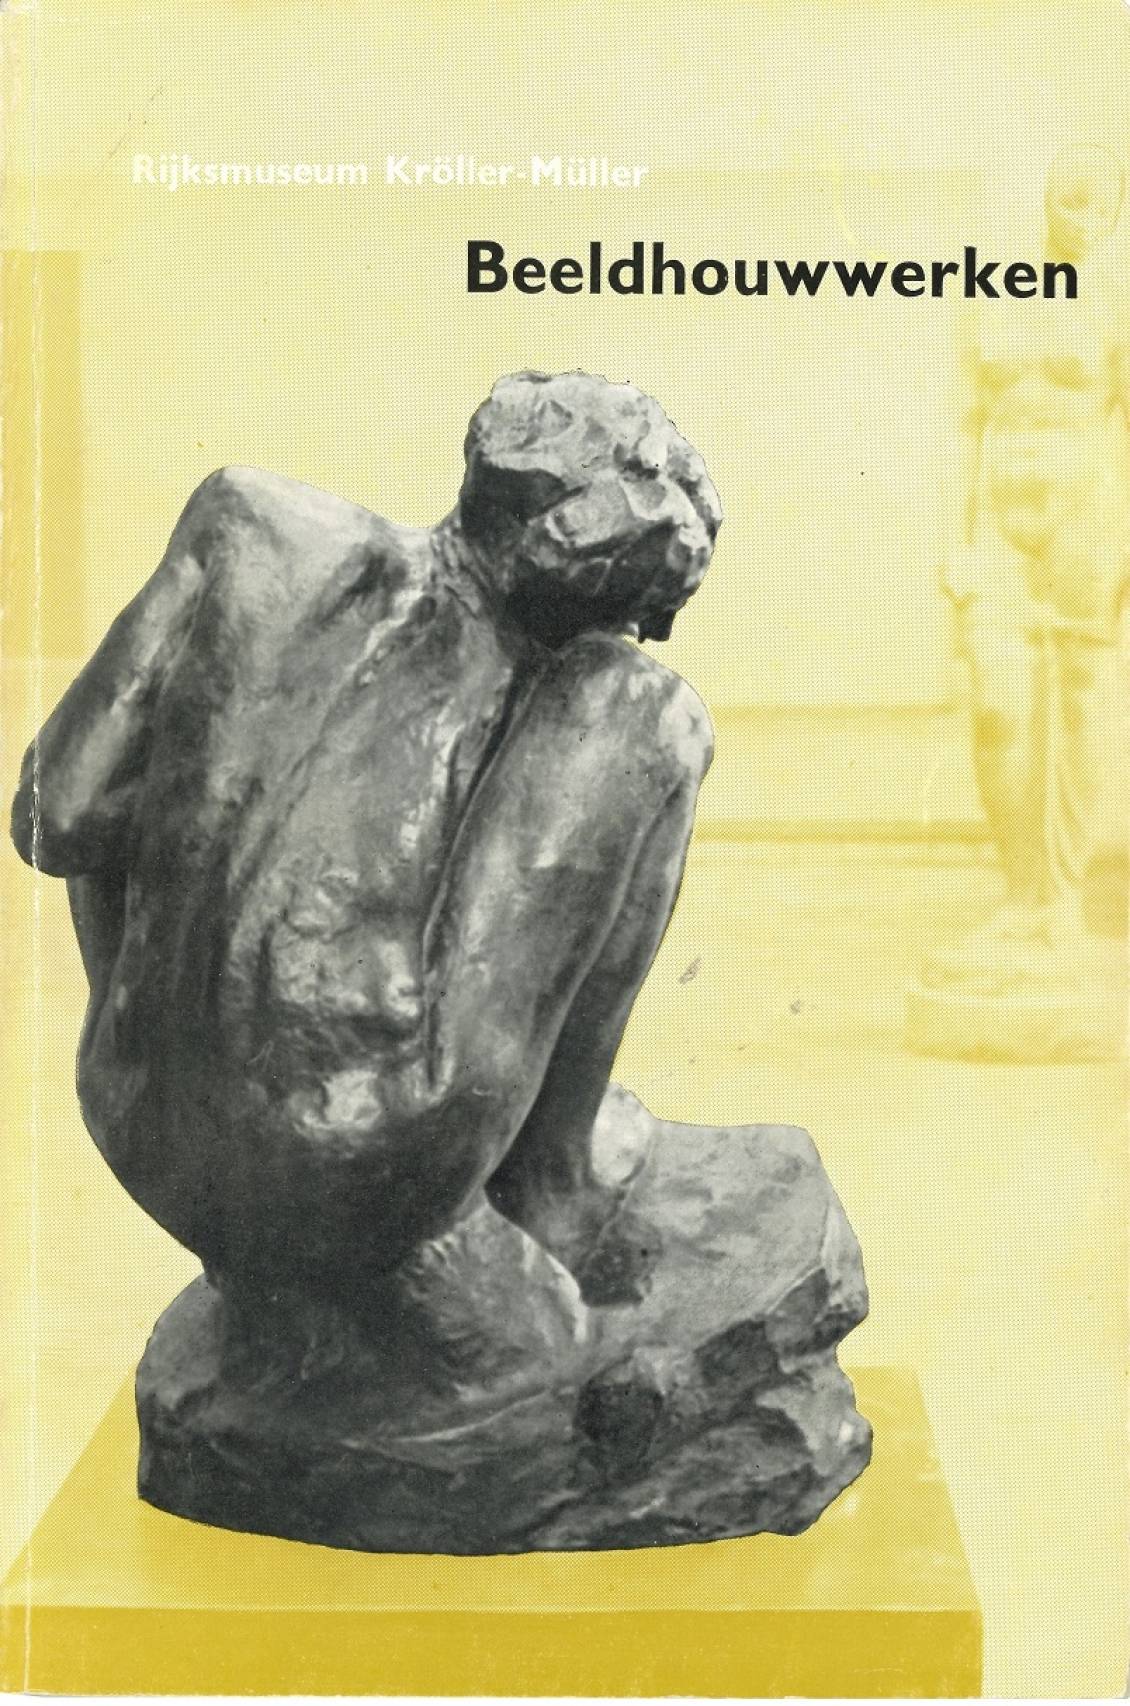 Catalogue collection Rijksmuseum Kröller-Müller: Sculptures, 1952